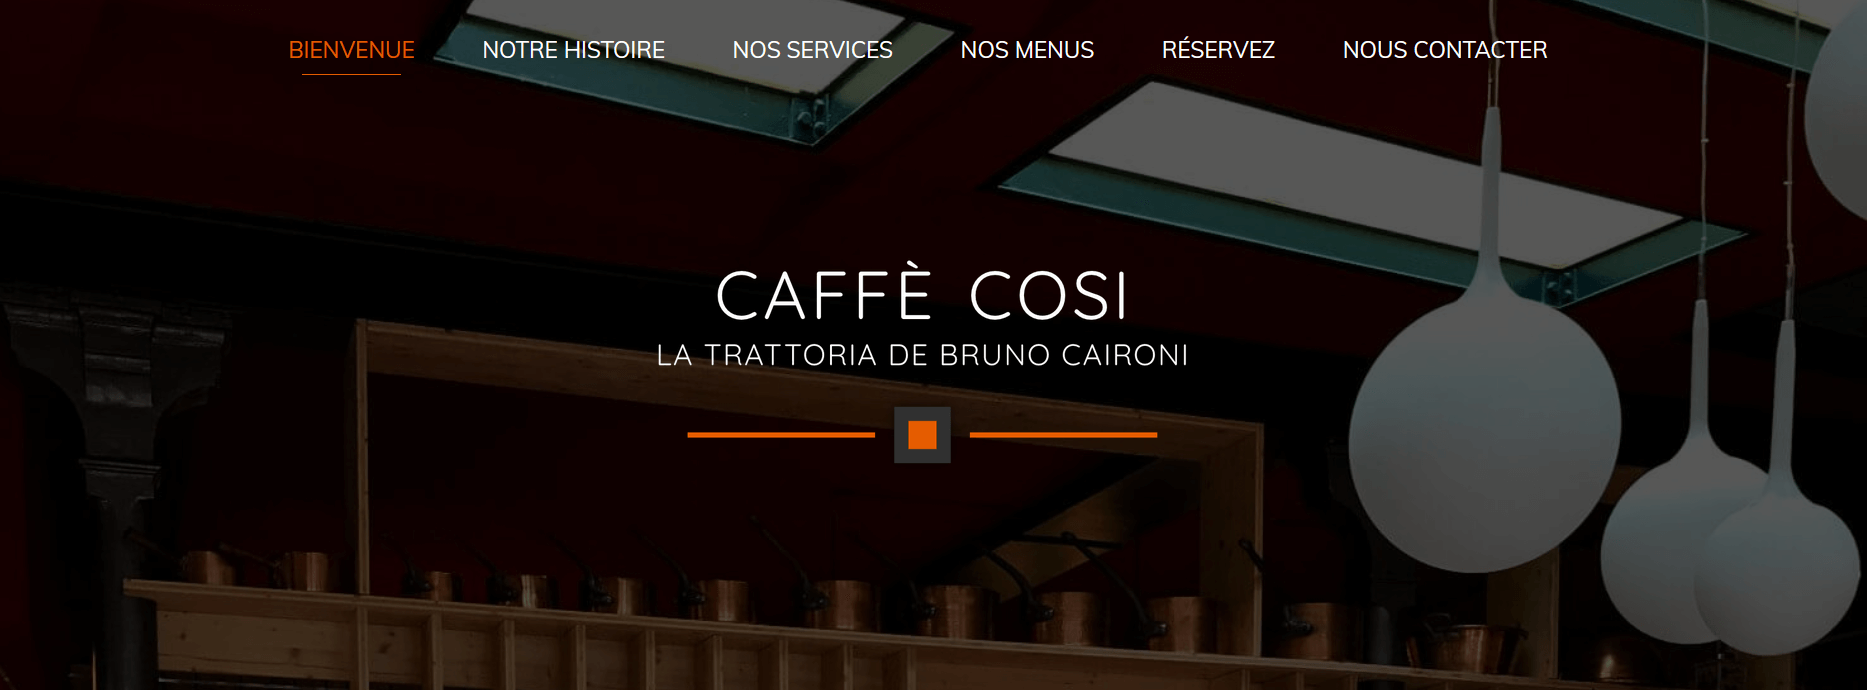 Concevoir une homepage : Exemple de Caffè Cosi